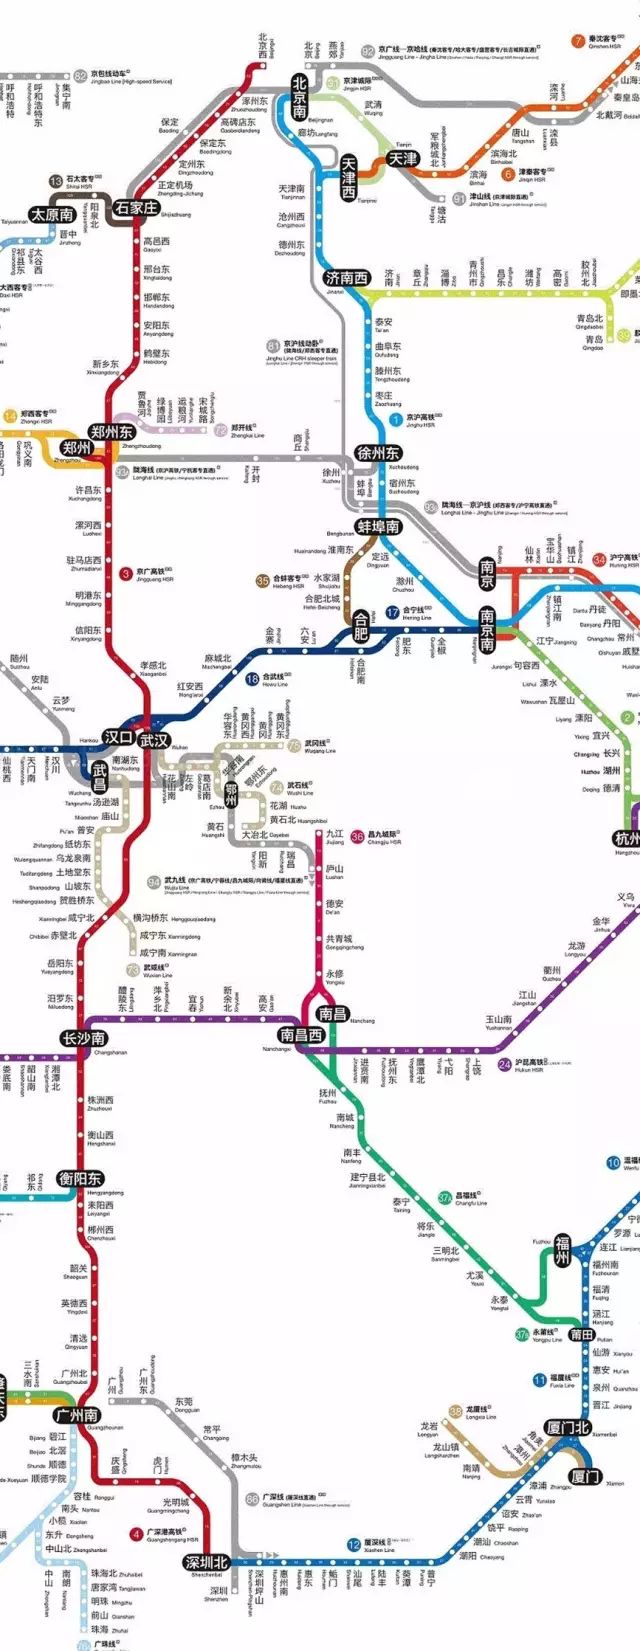 谁做的这份全国高铁线路图,画得像地铁一样!人手一份